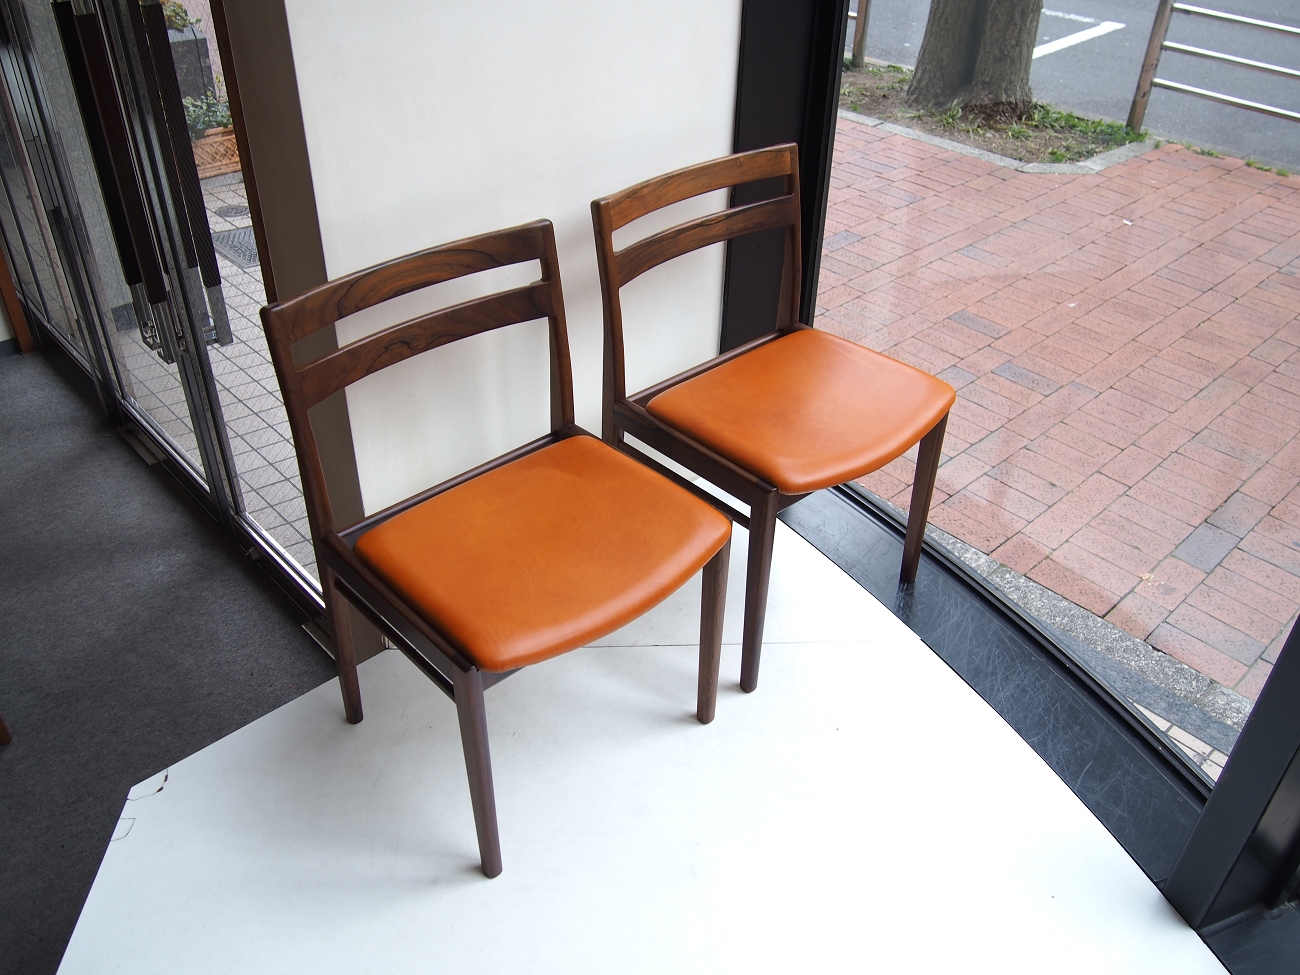 Chair « 過去販売商品 « ローズウッド材(Rosewood) « ソファ・チェア « VINTAGE « ビンテージ北欧家具・修理